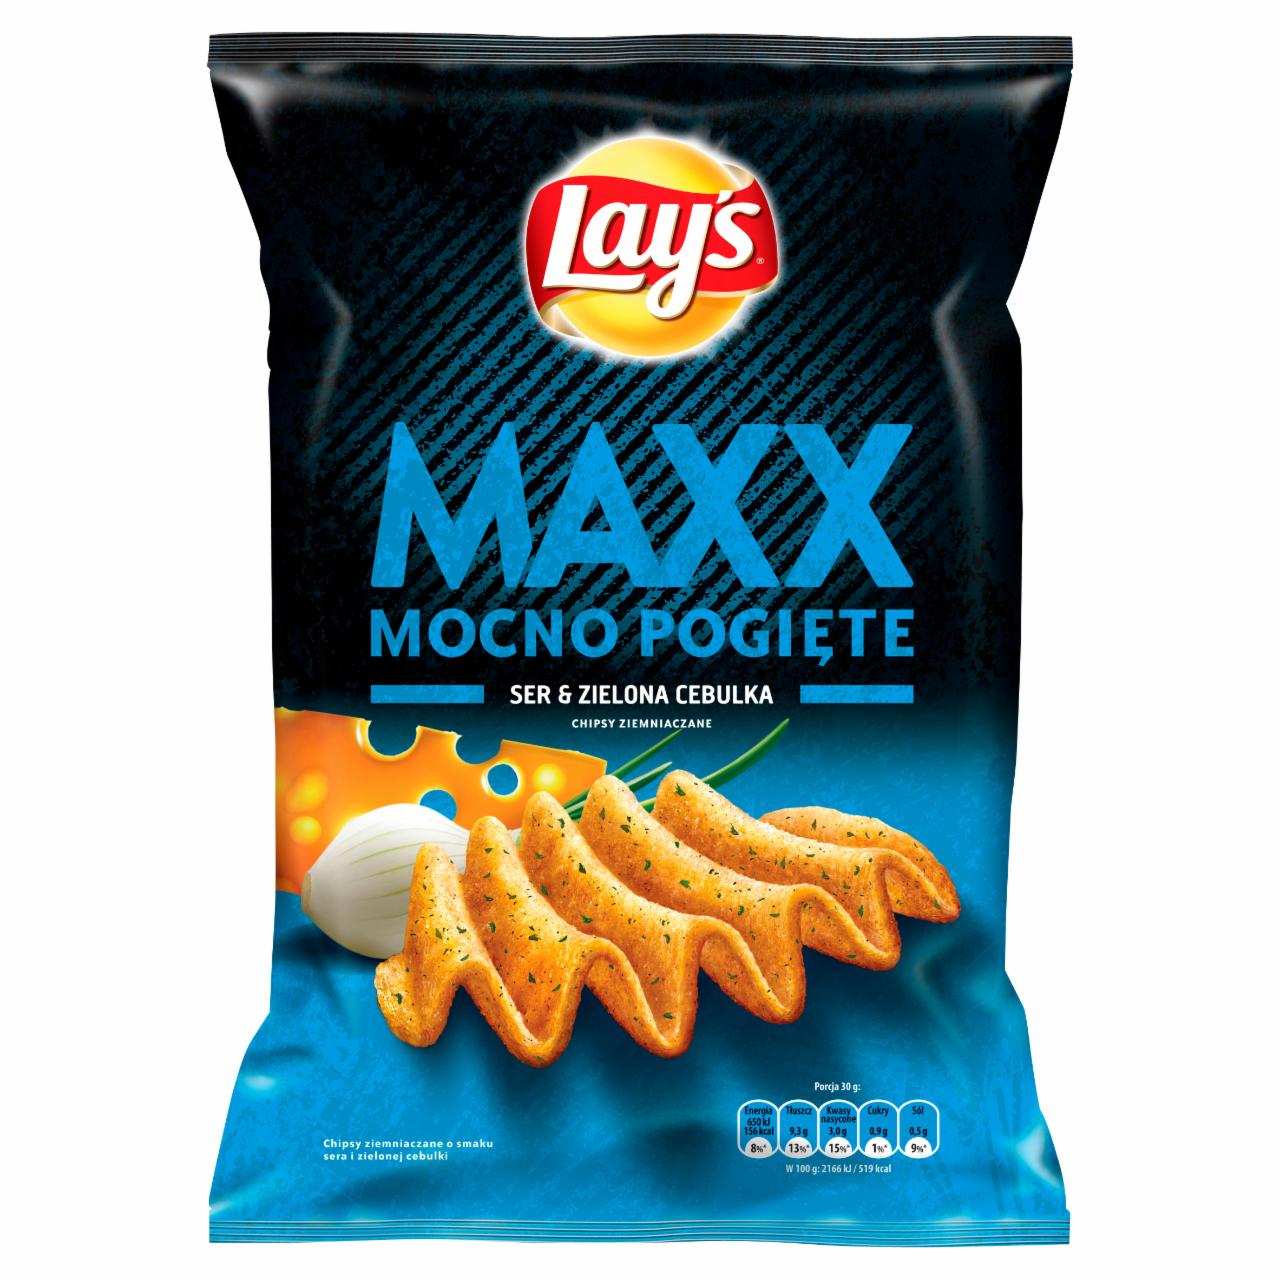 Zdjęcia - Lay's Maxx Mocno Pogięte Ser & Zielona cebulka Chipsy ziemniaczane 140 g